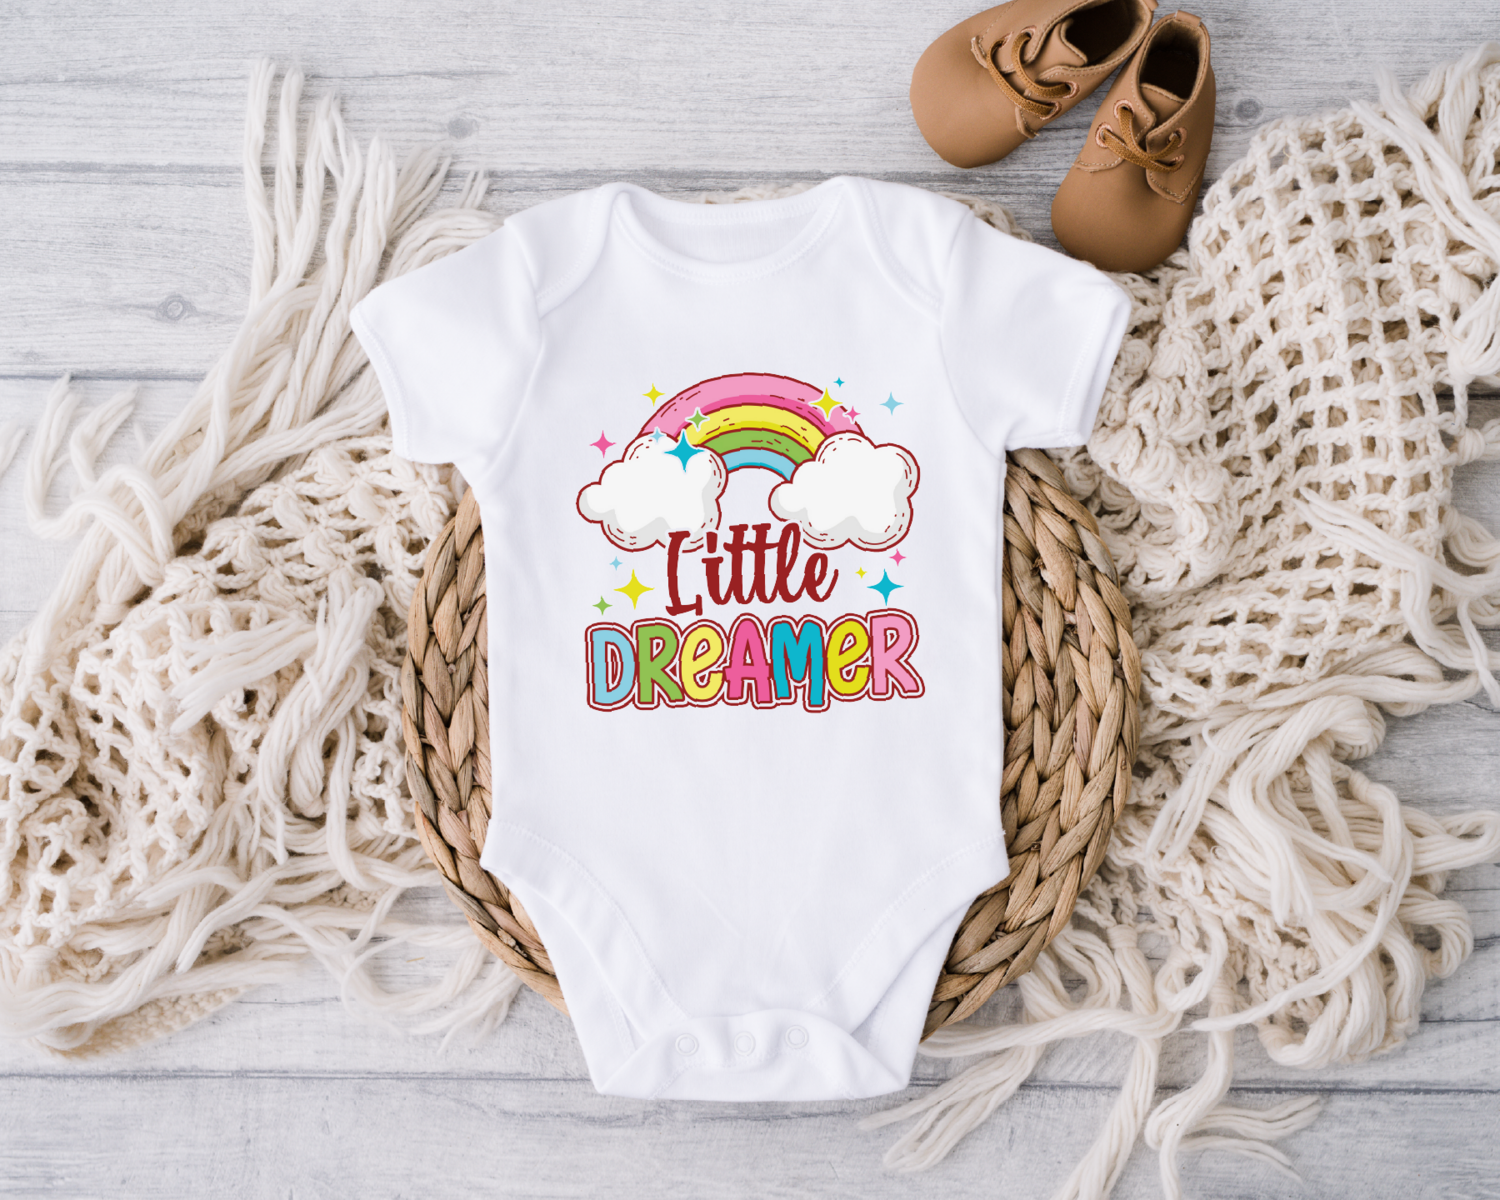 Little Dreamer Onesie, Baby Bodysuit Unisex Toddler Shirt